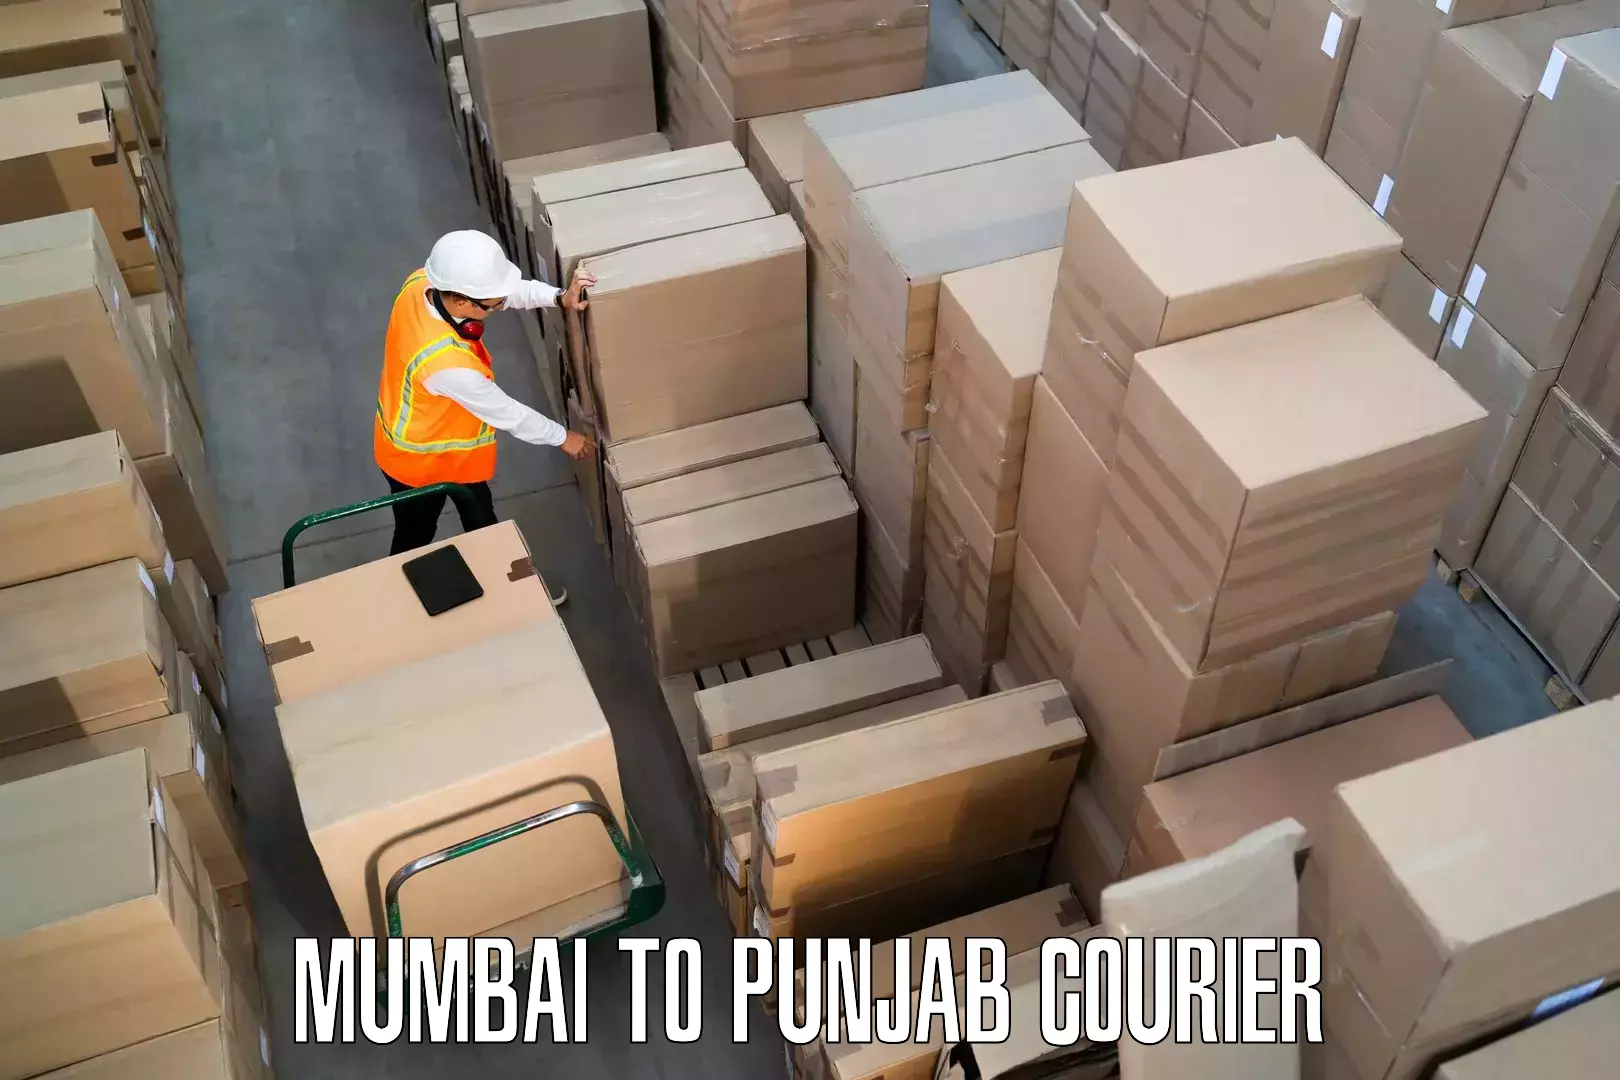 Furniture transport experts Mumbai to Dinanagar